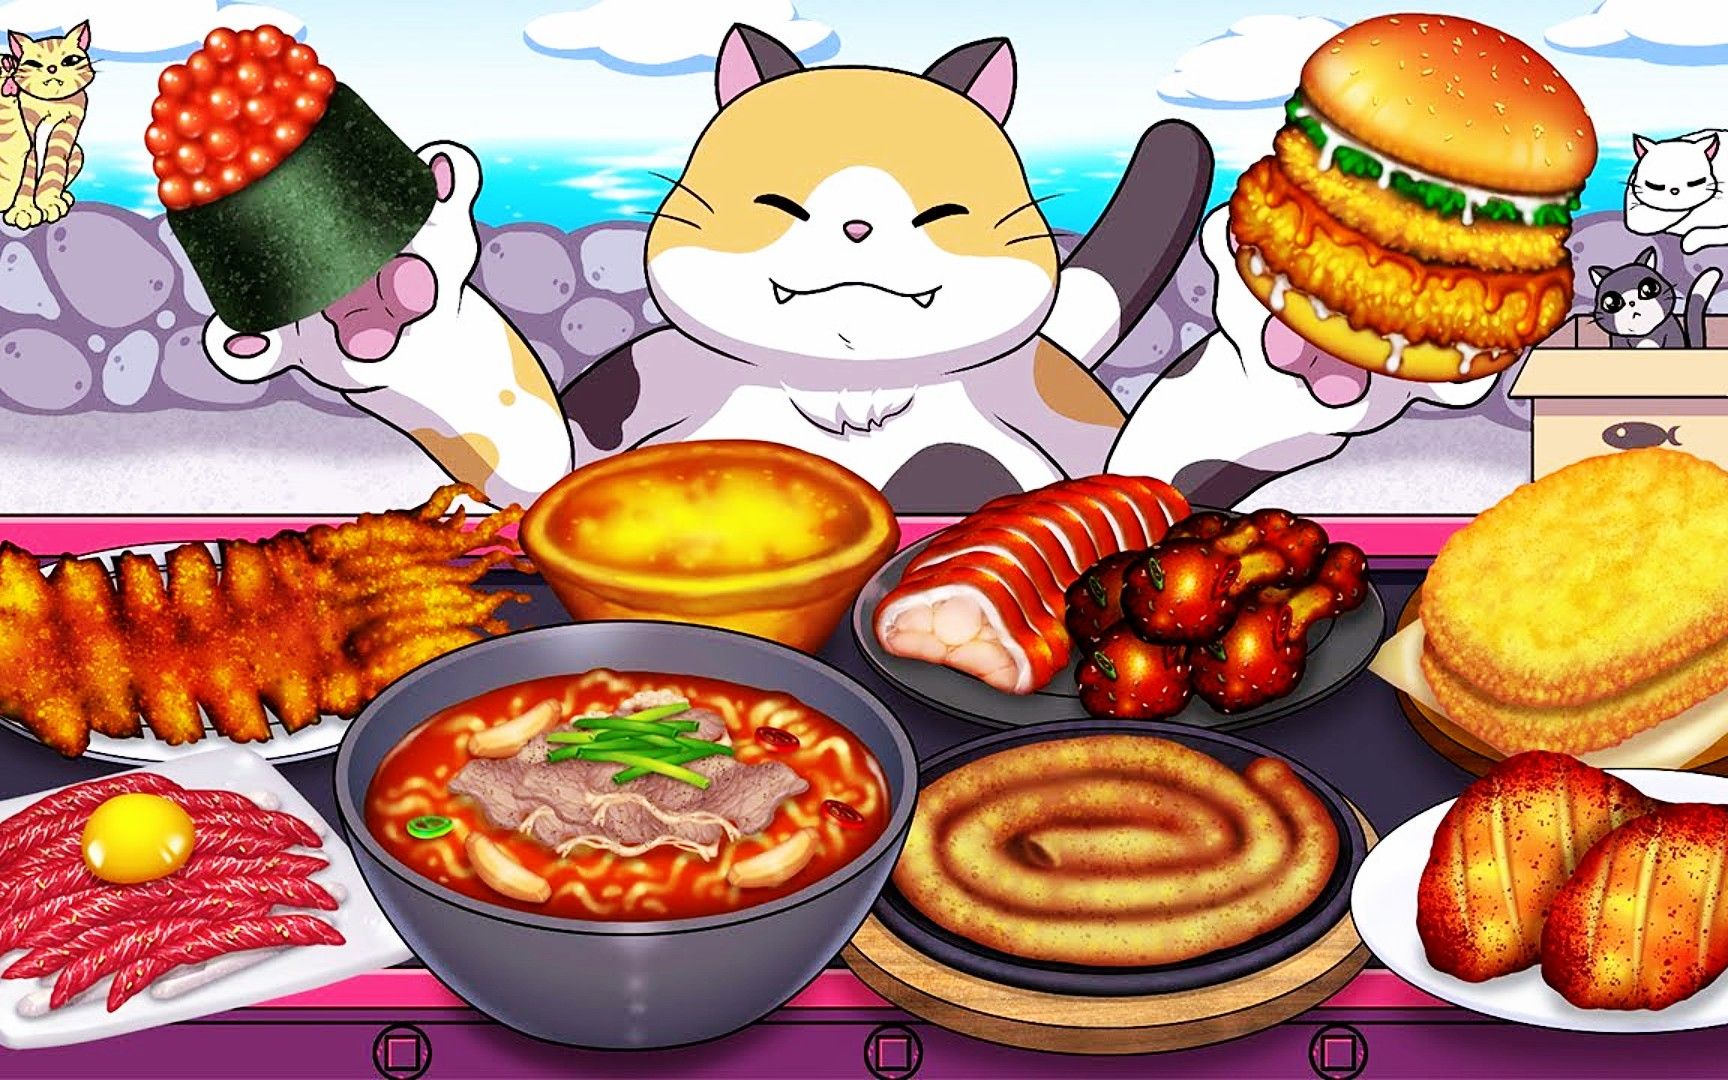 美食动画:肉食主义者,料理猫王带你品尝不一样的美味体验!